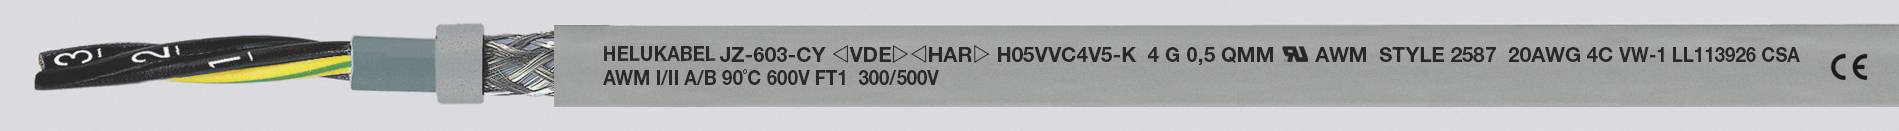 HELUKABEL JZ-603-CY Steuerleitung 5 G 1.50 mm² Grau 83755-1000 1000 m